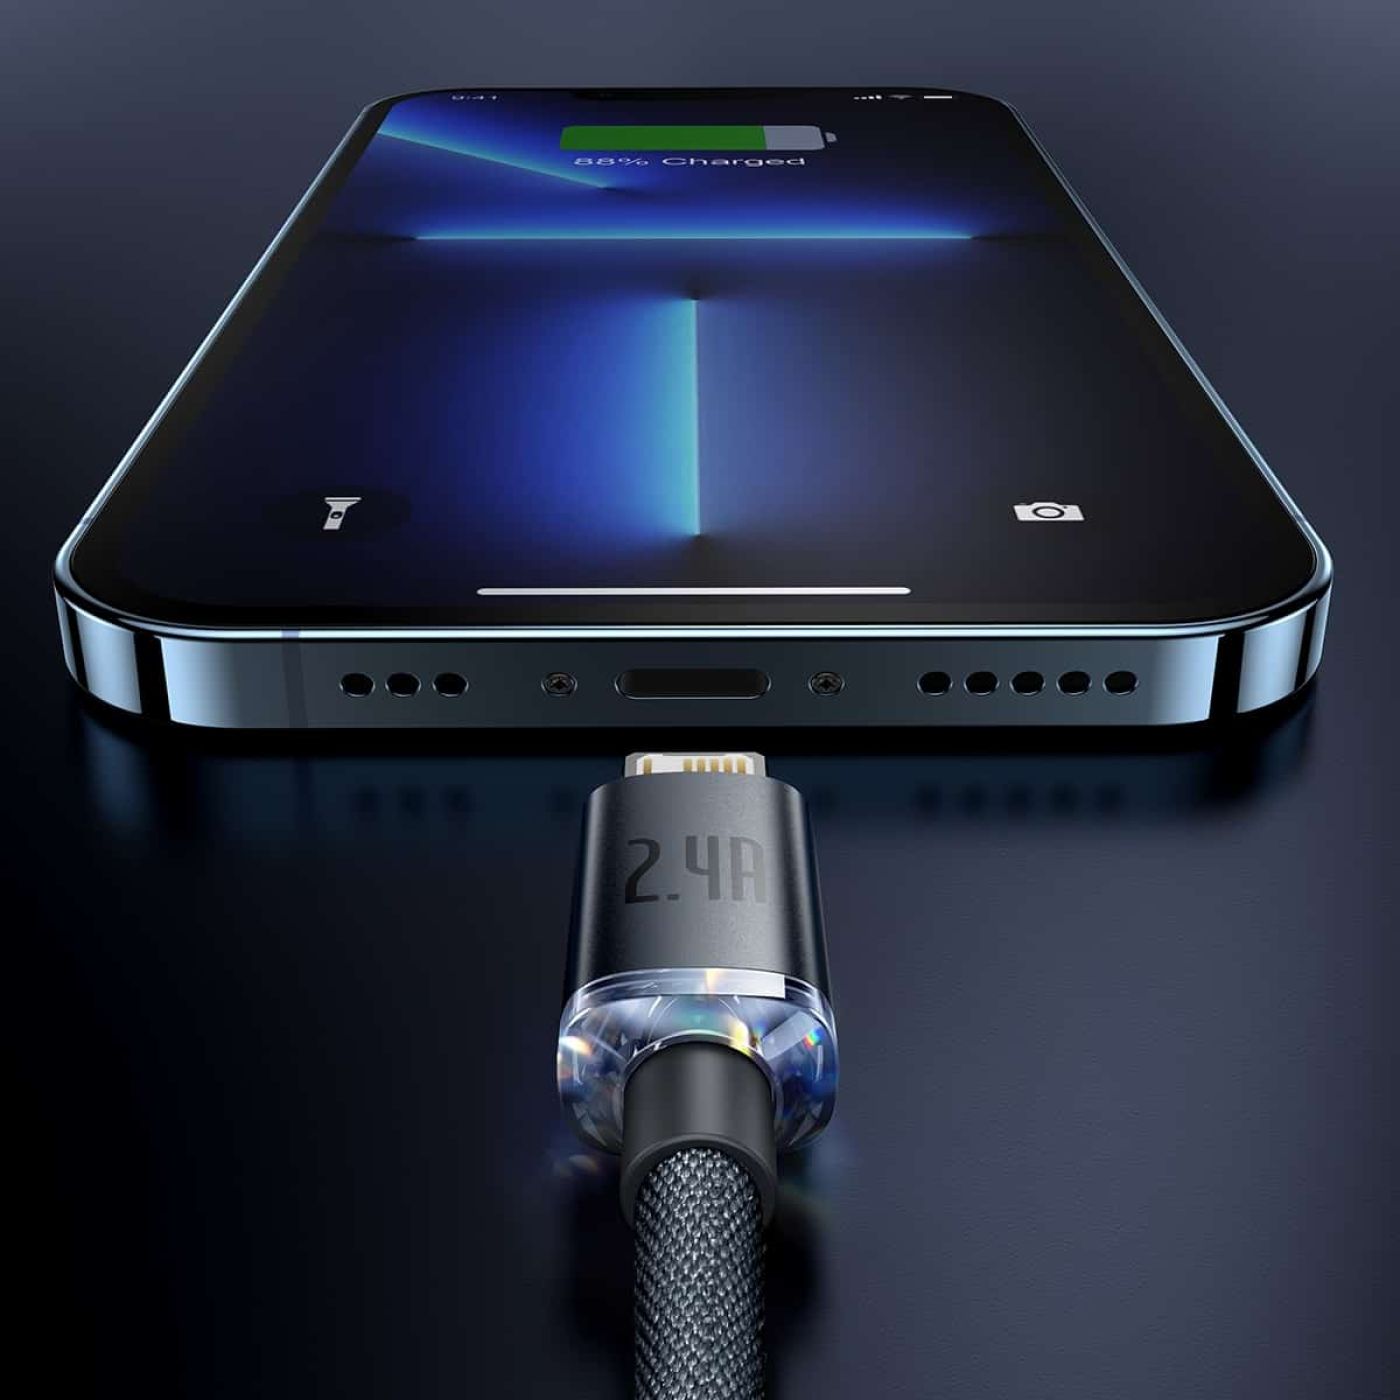 Cáp sạc iPhone Baseus Crystal Series USB to lightning 2.4A dài 1,2m